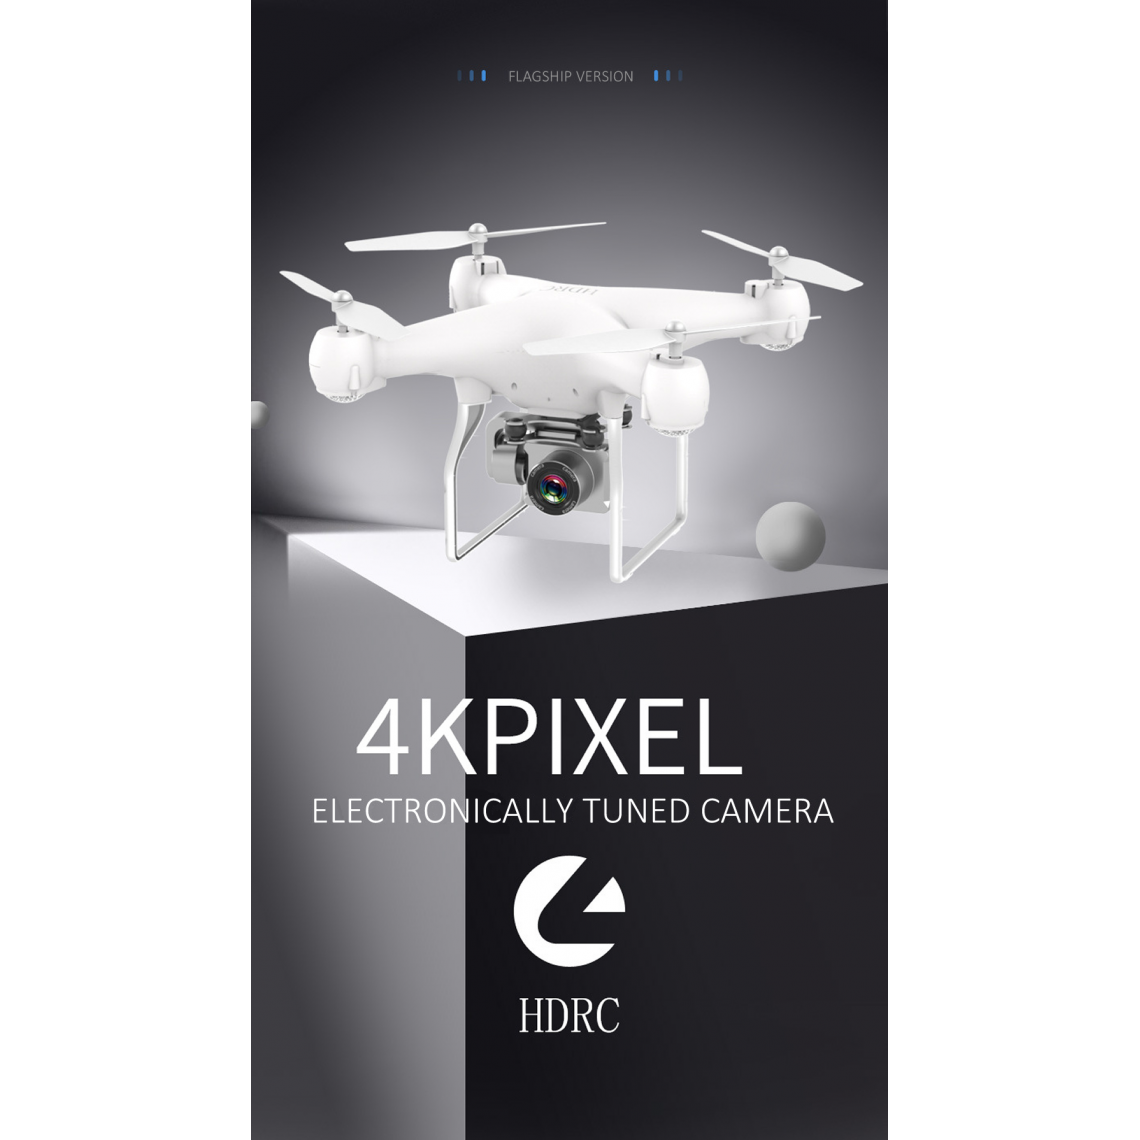 Universal - Double HD 4K RC Drone Quadcopter Drone et Caméra GPS WiFi Photographie aérienne grand angle Jouet télécommandé à longue durée de vie | RC Helicopter(blanche) - Drone